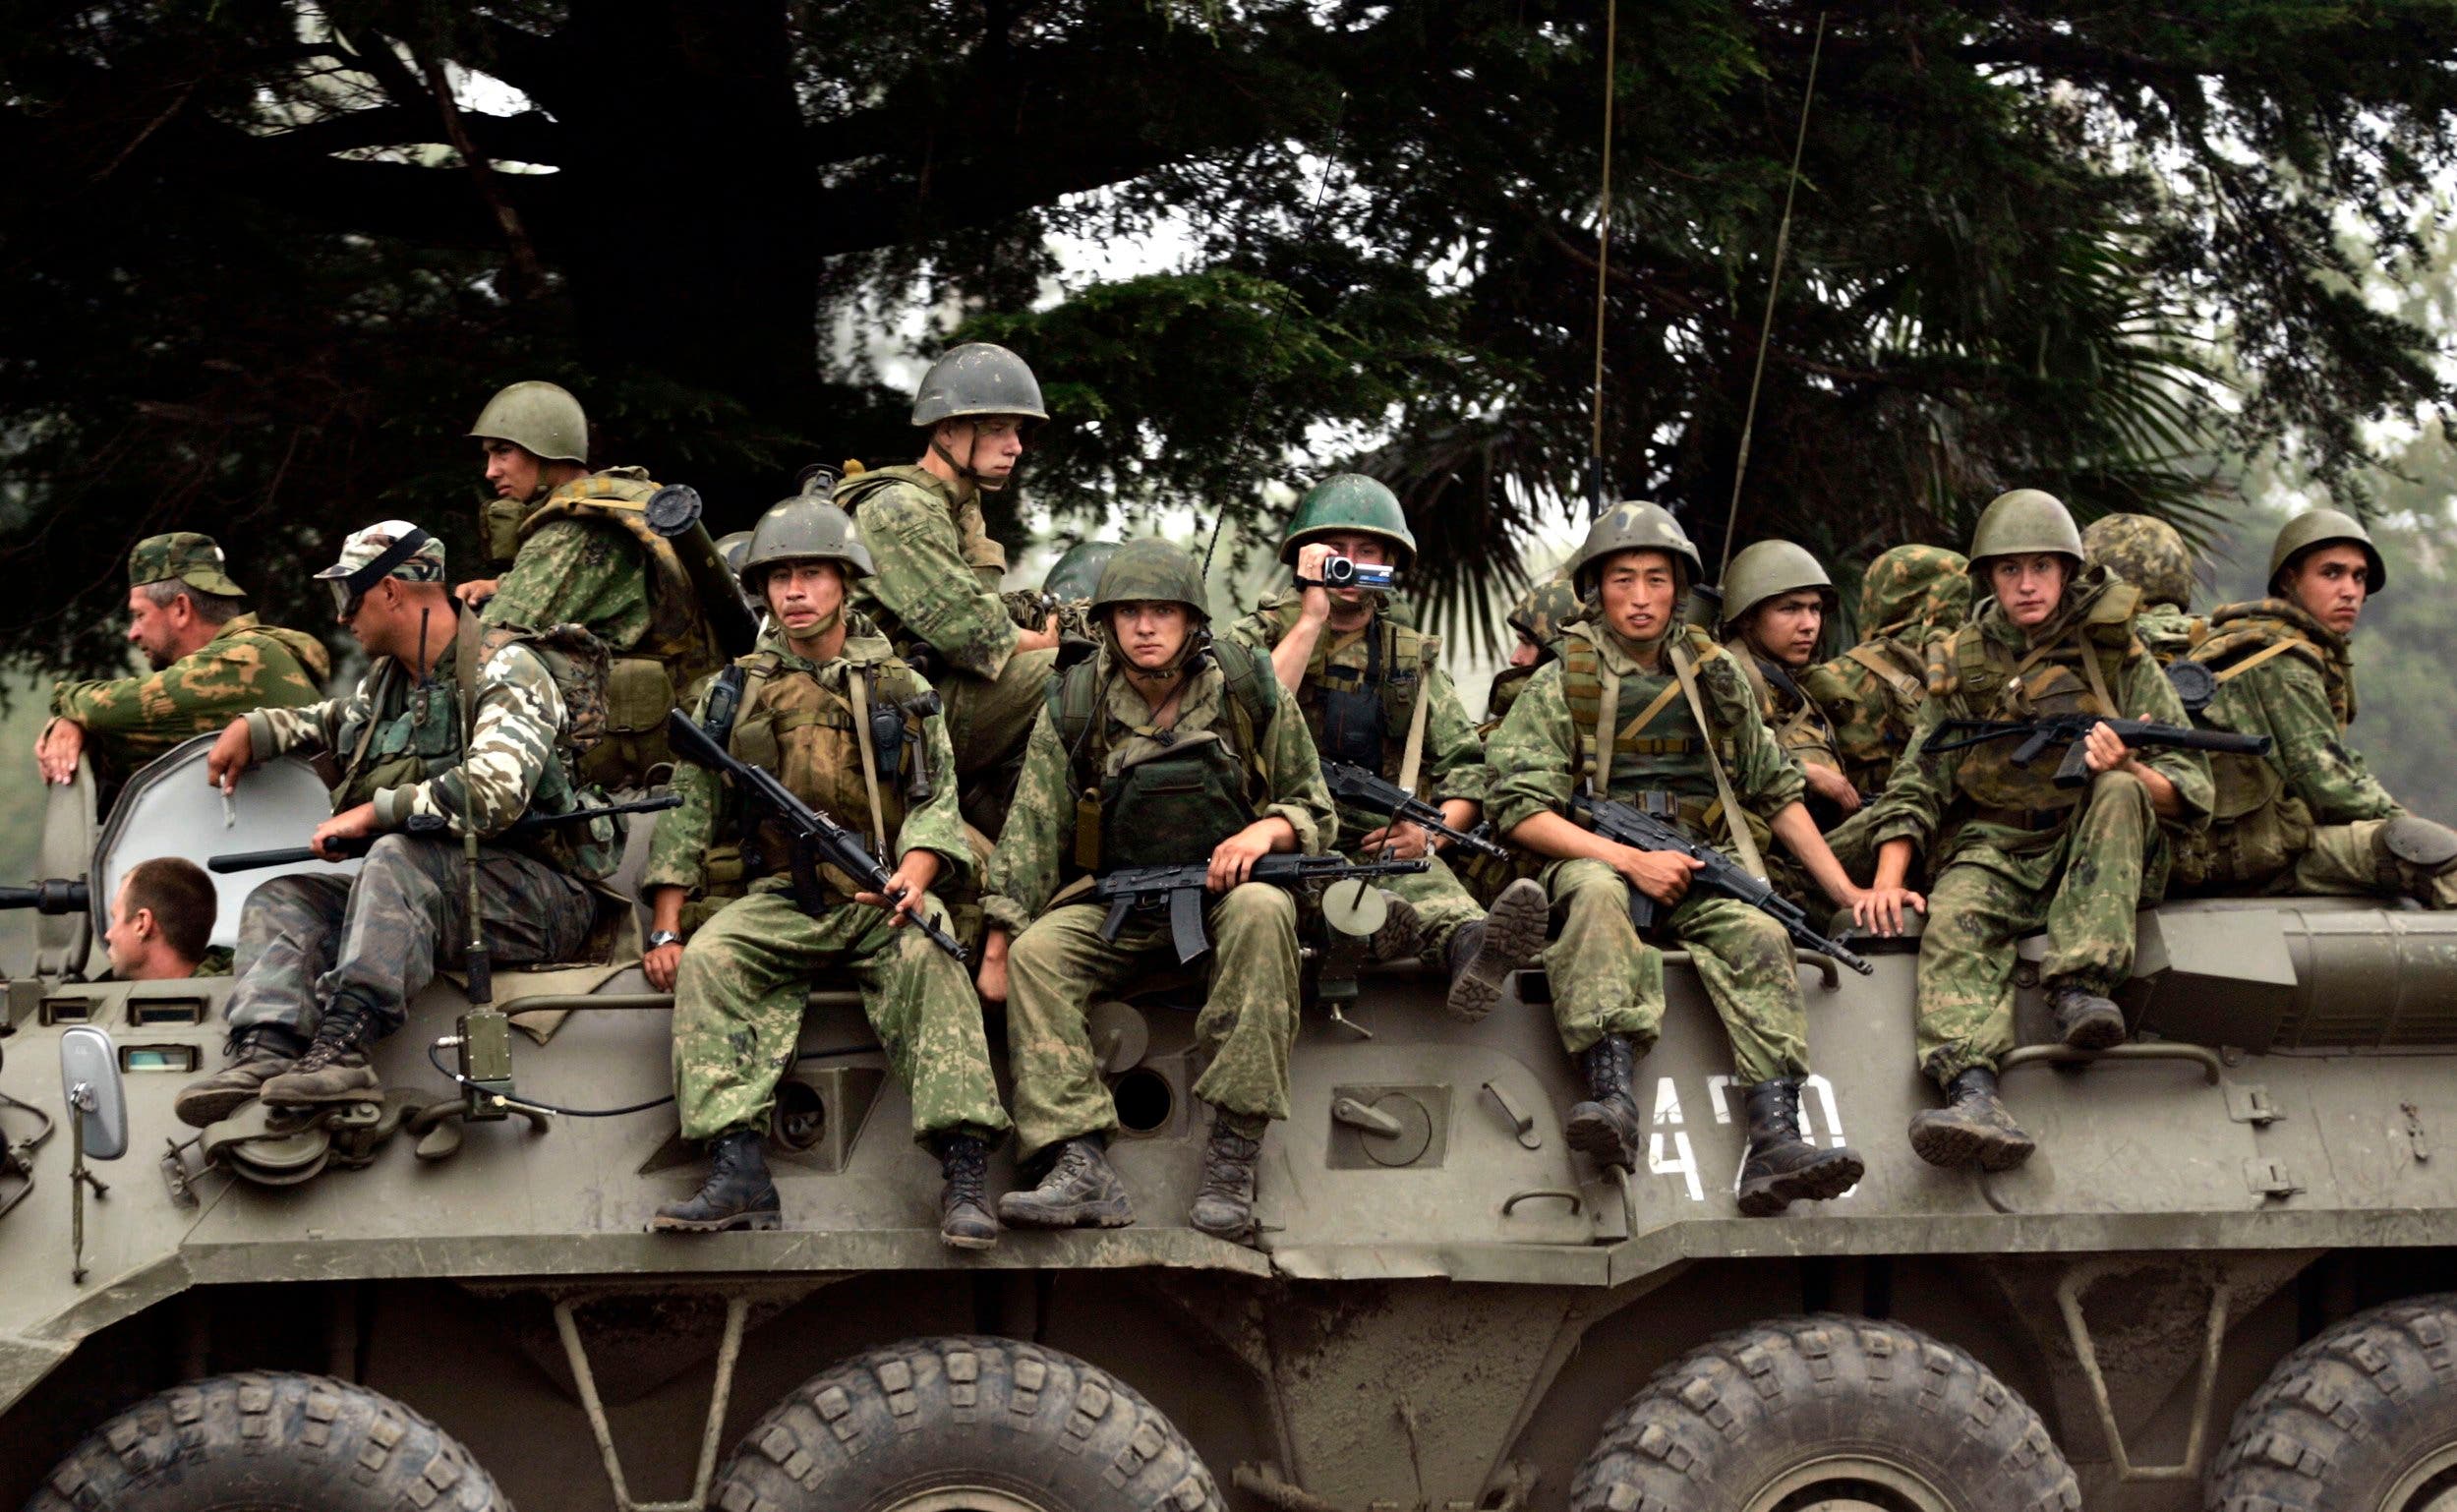 الجيش الروسي في منطقة أوسيتيا الجنوبية.خلال النزاع في 2008